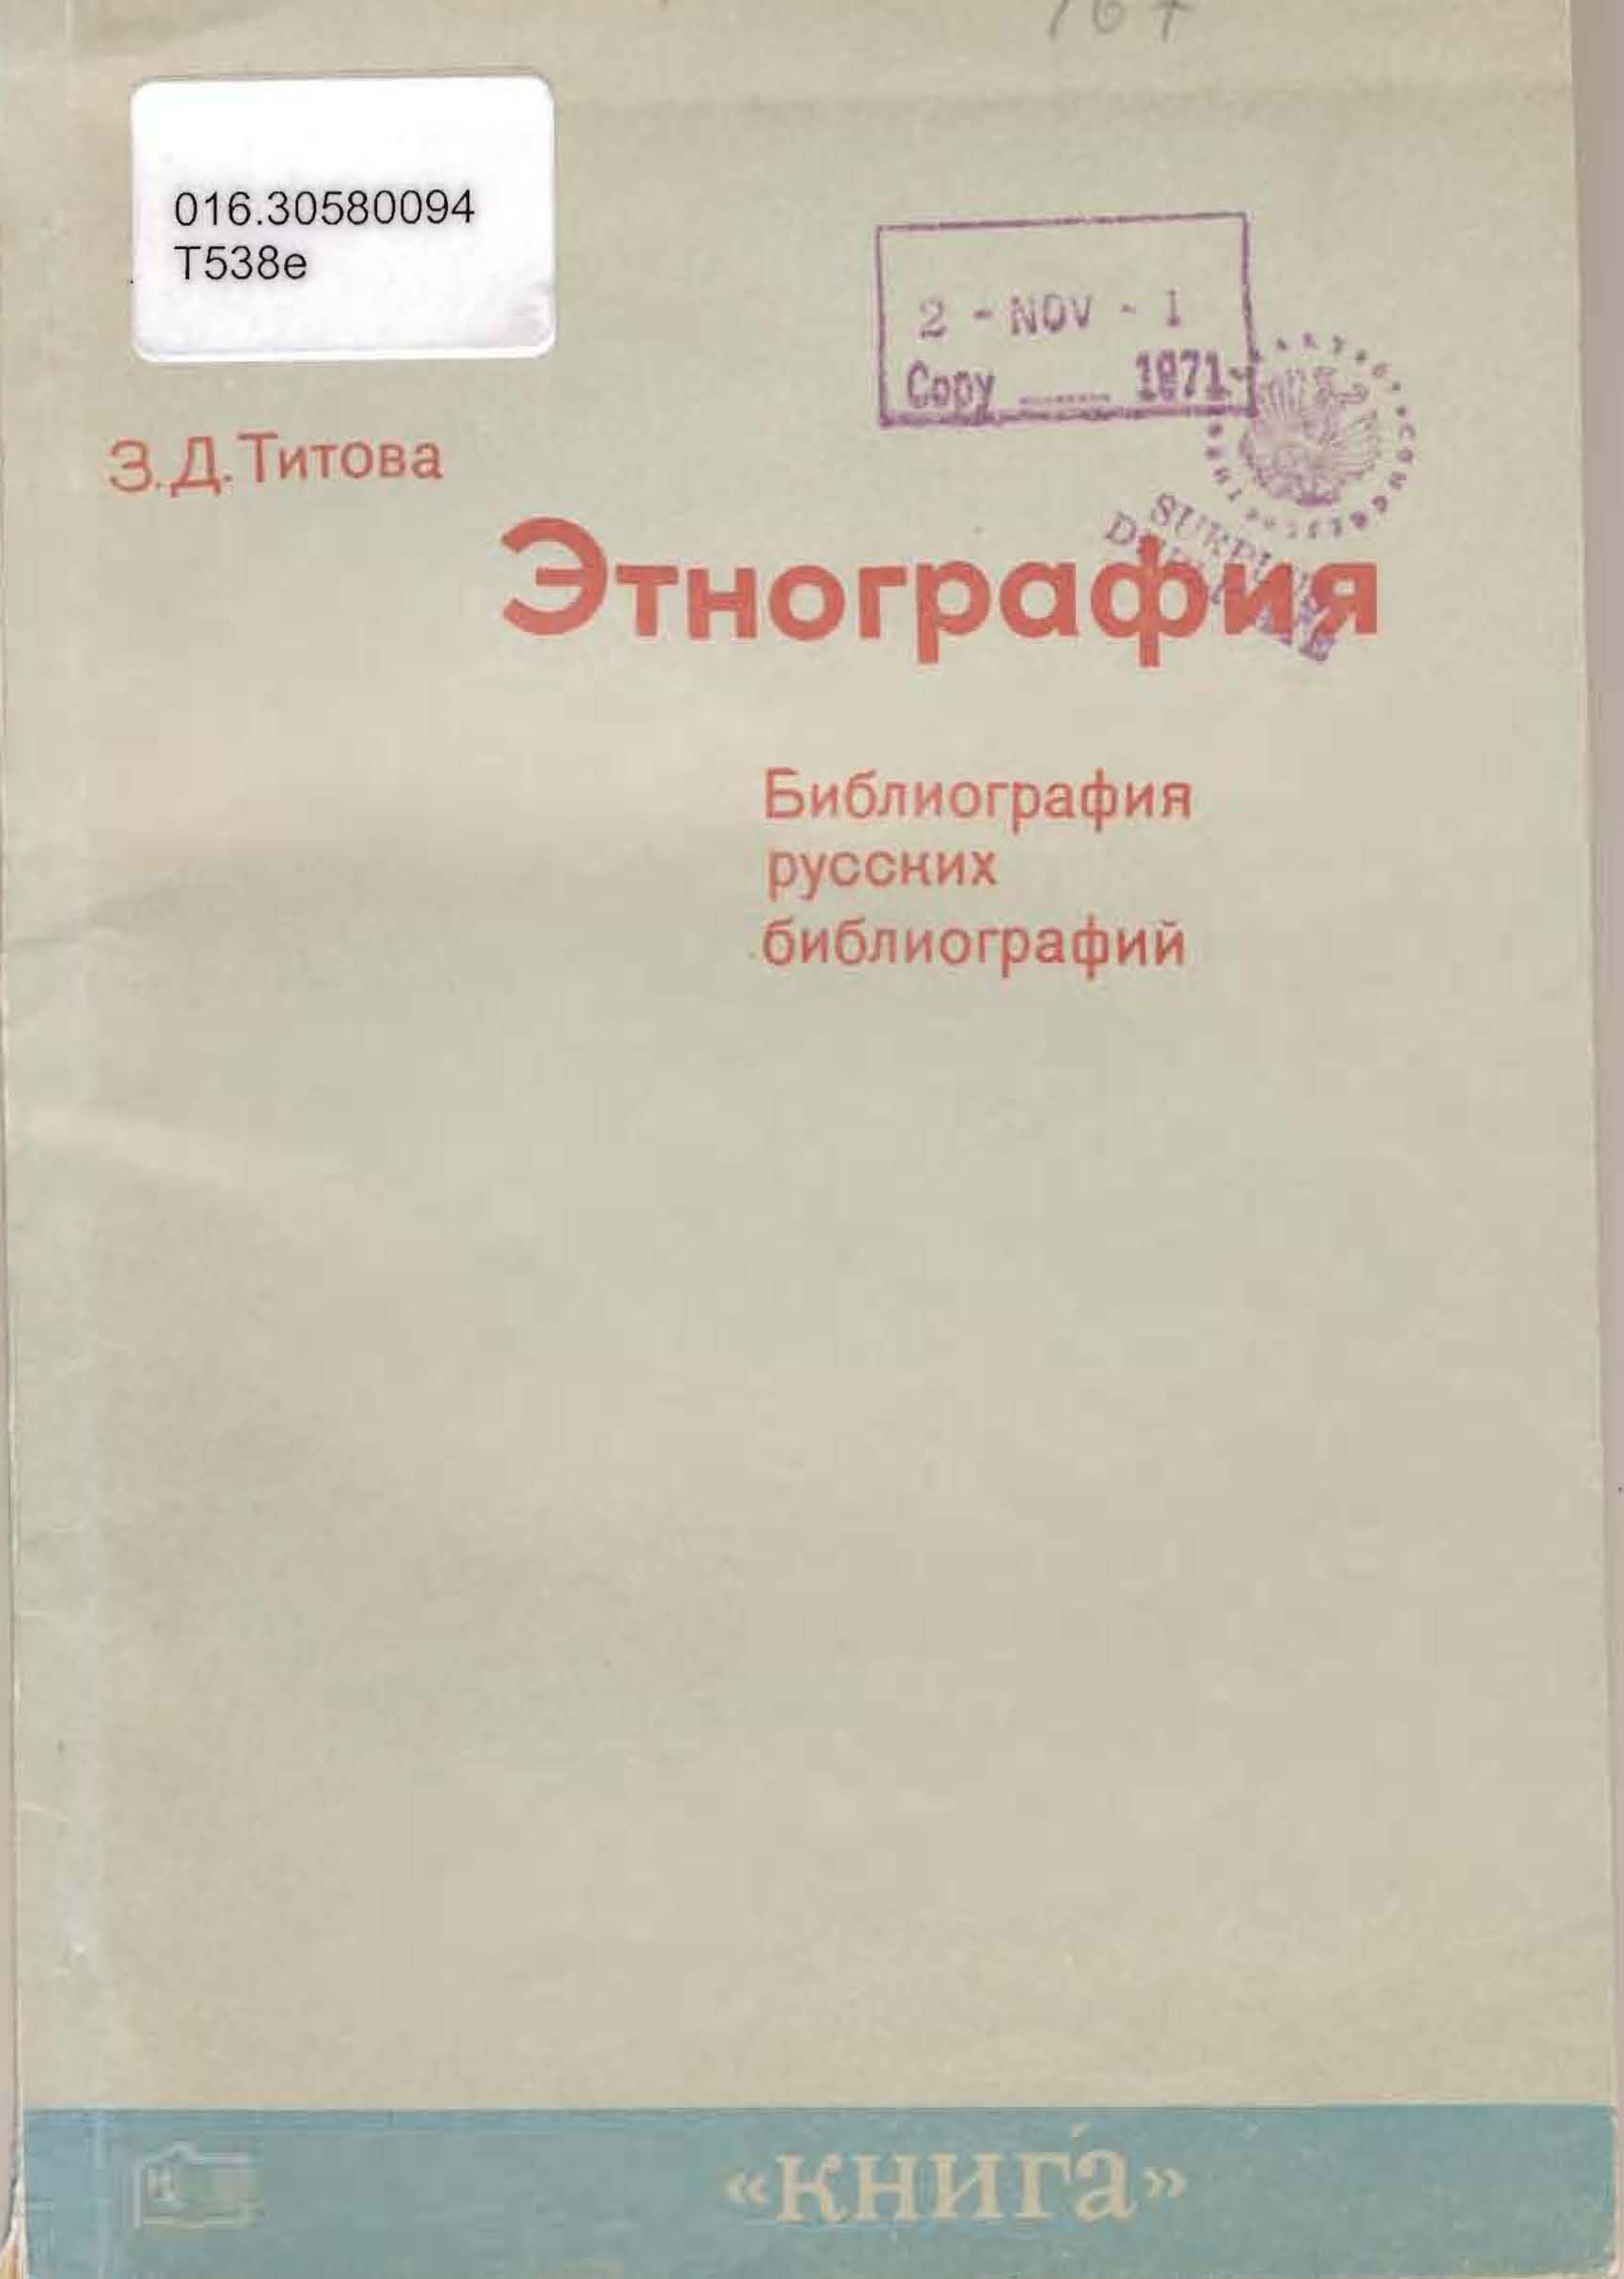 Titova bibliography cover